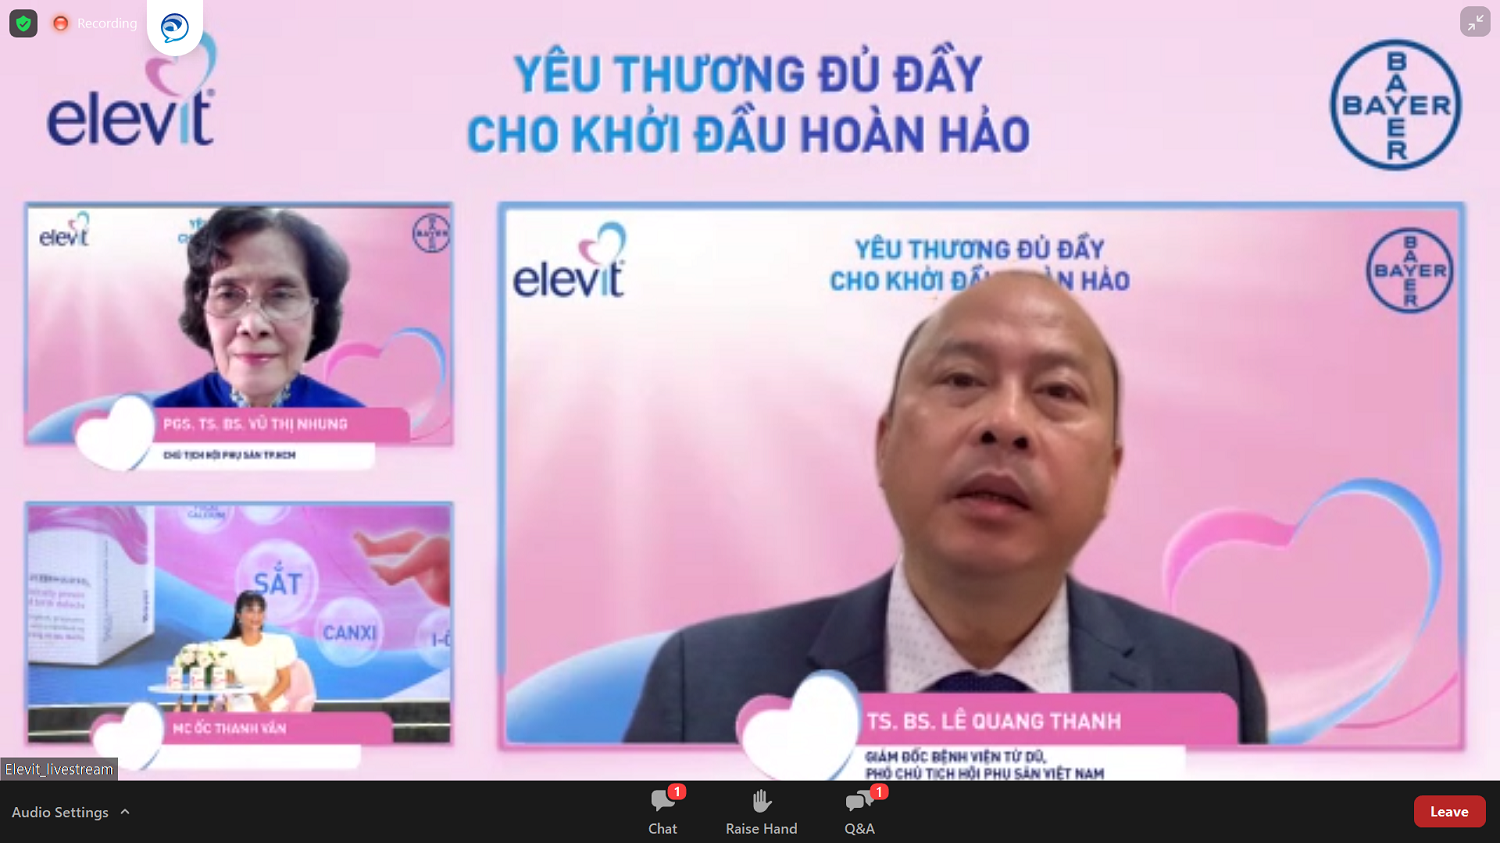 Bayer ra mắt vitamin tổng hợp cho thai kỳ Elevit tại Việt Nam - 3